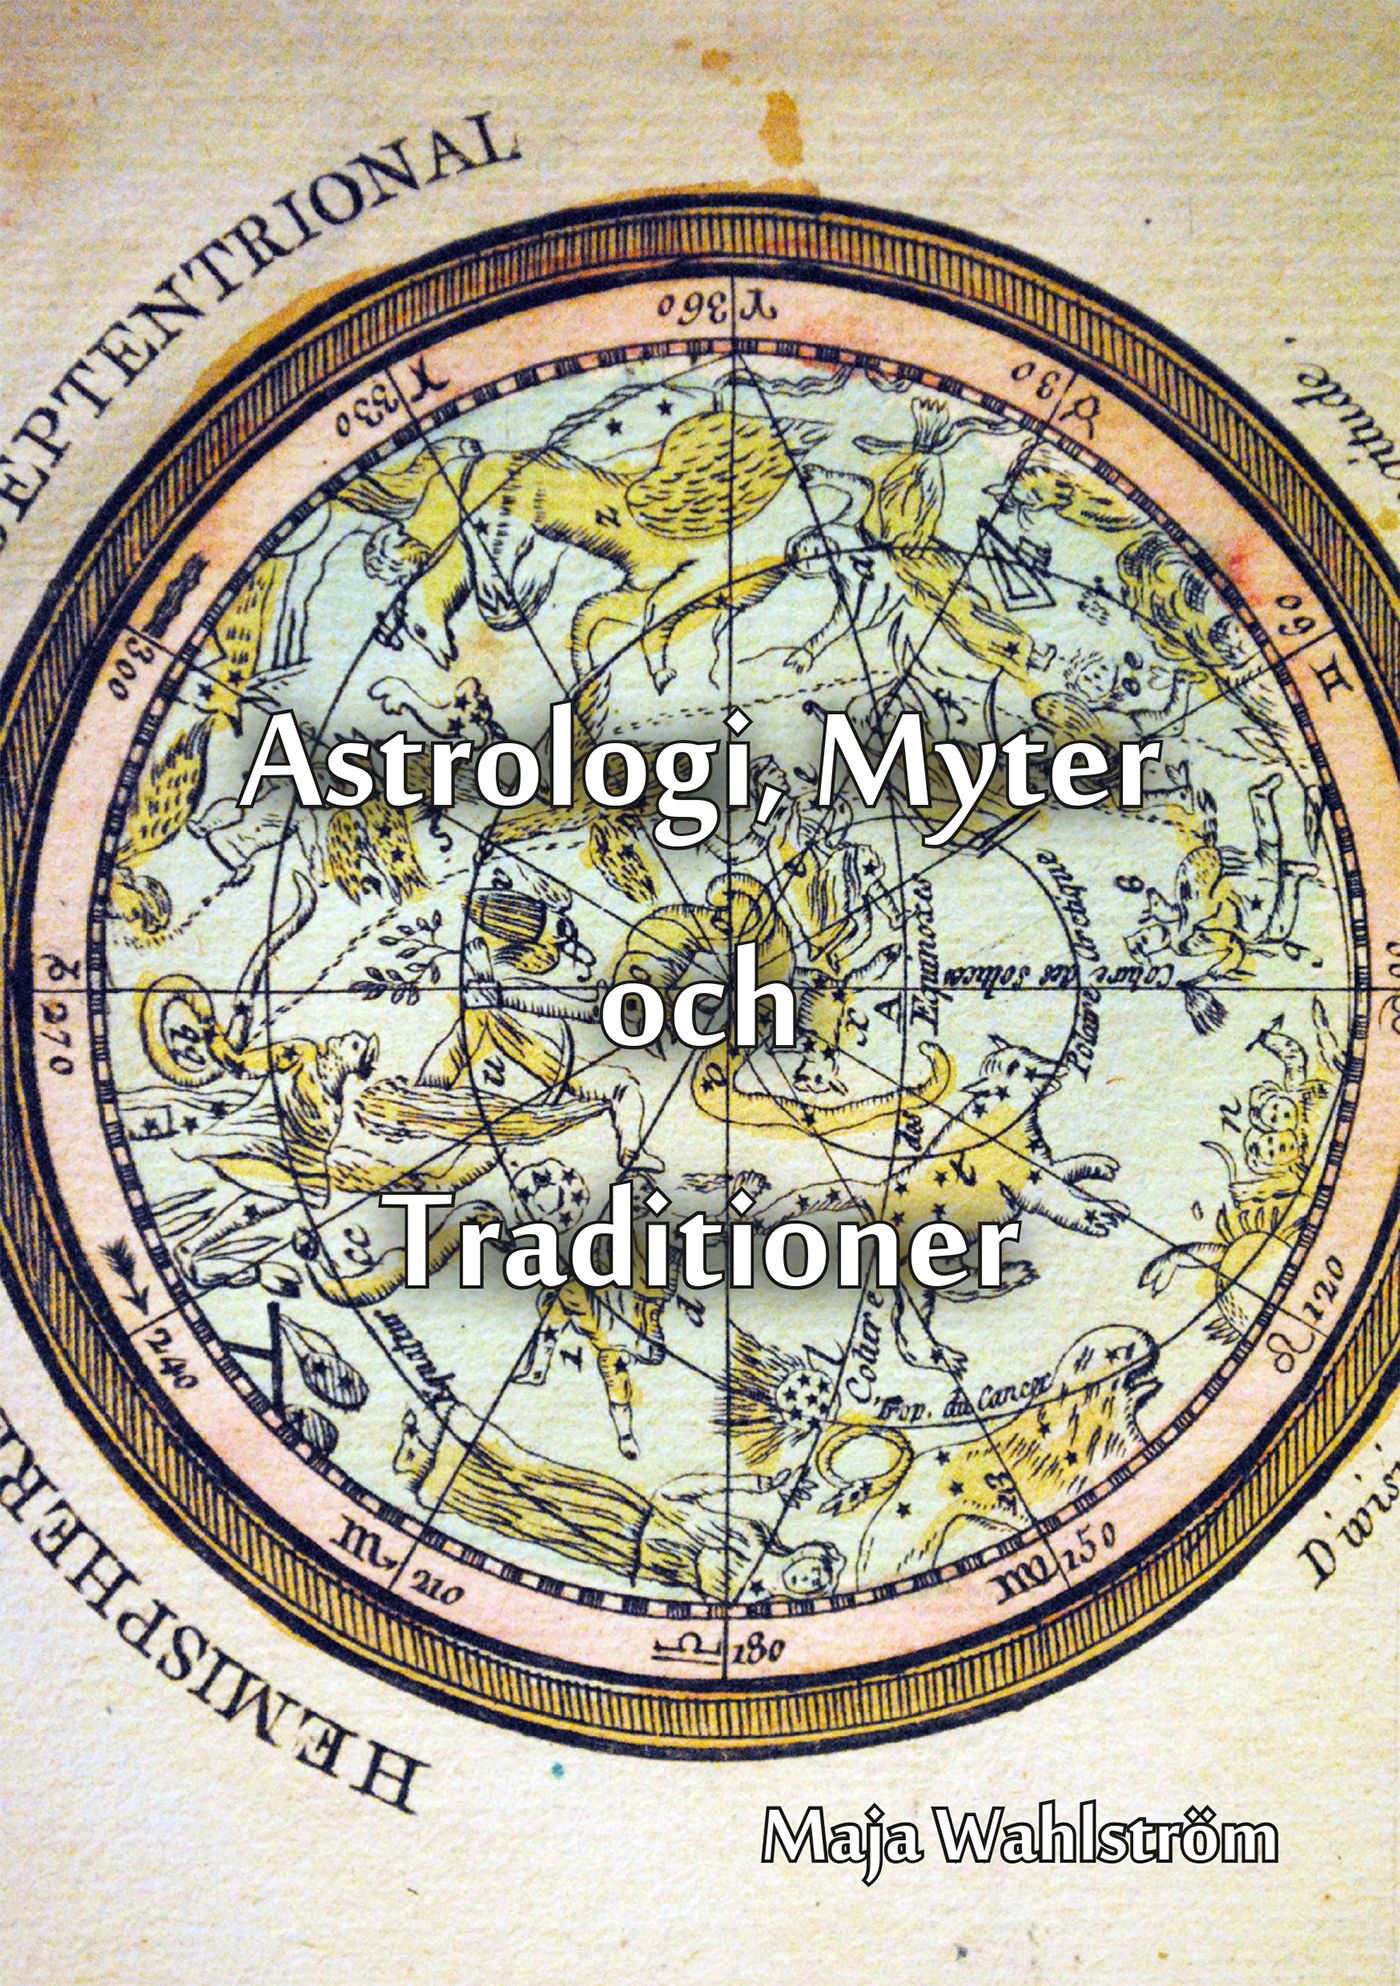 Astrologi, Myter och Traditioner, e-bok av Maja Wahlström